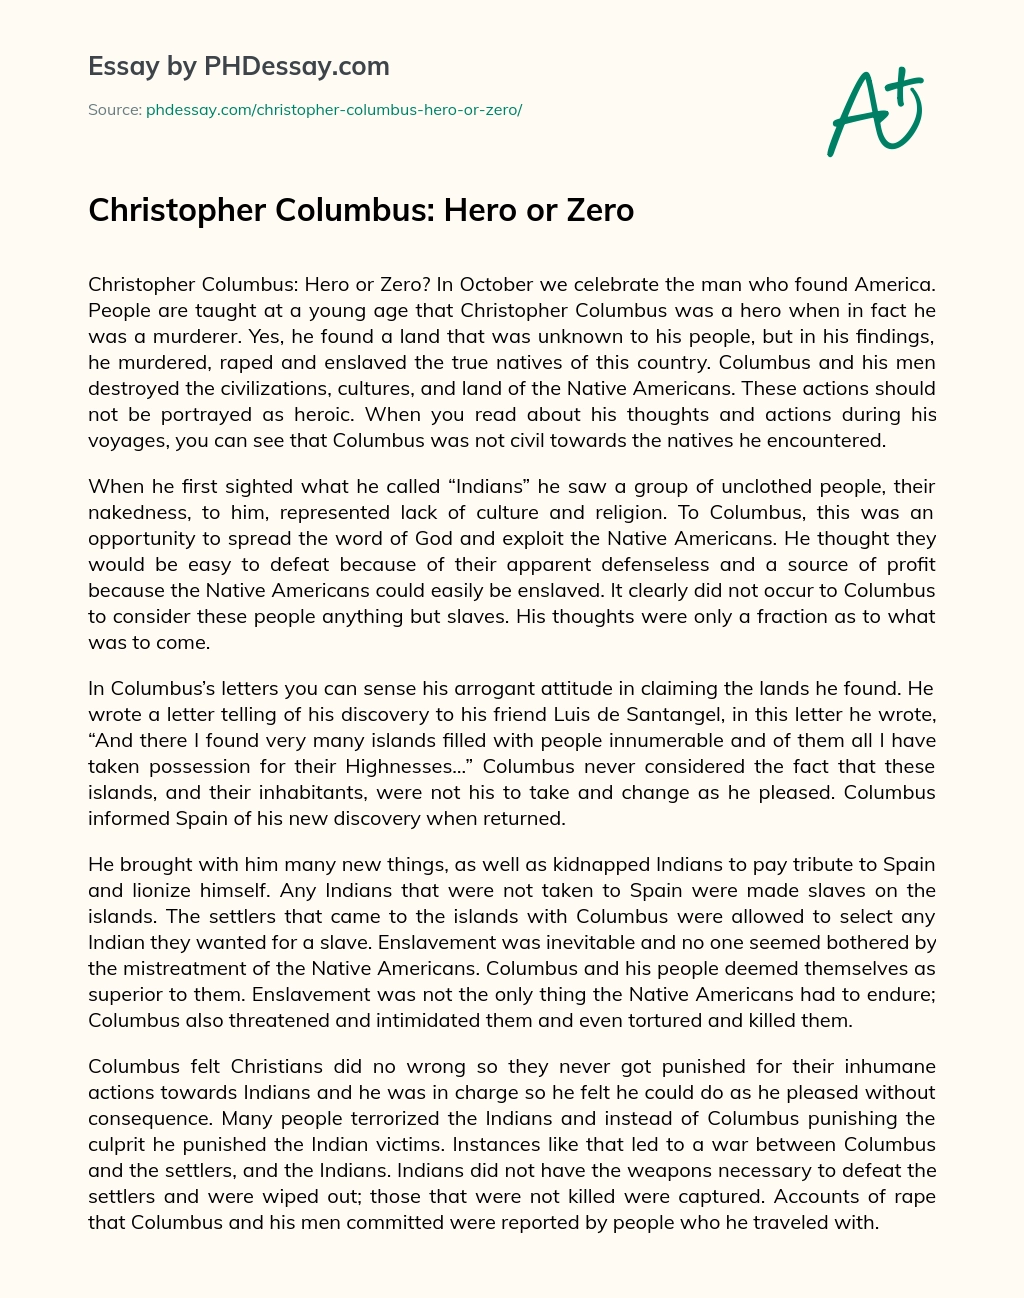 Christopher Columbus: Hero or Zero essay